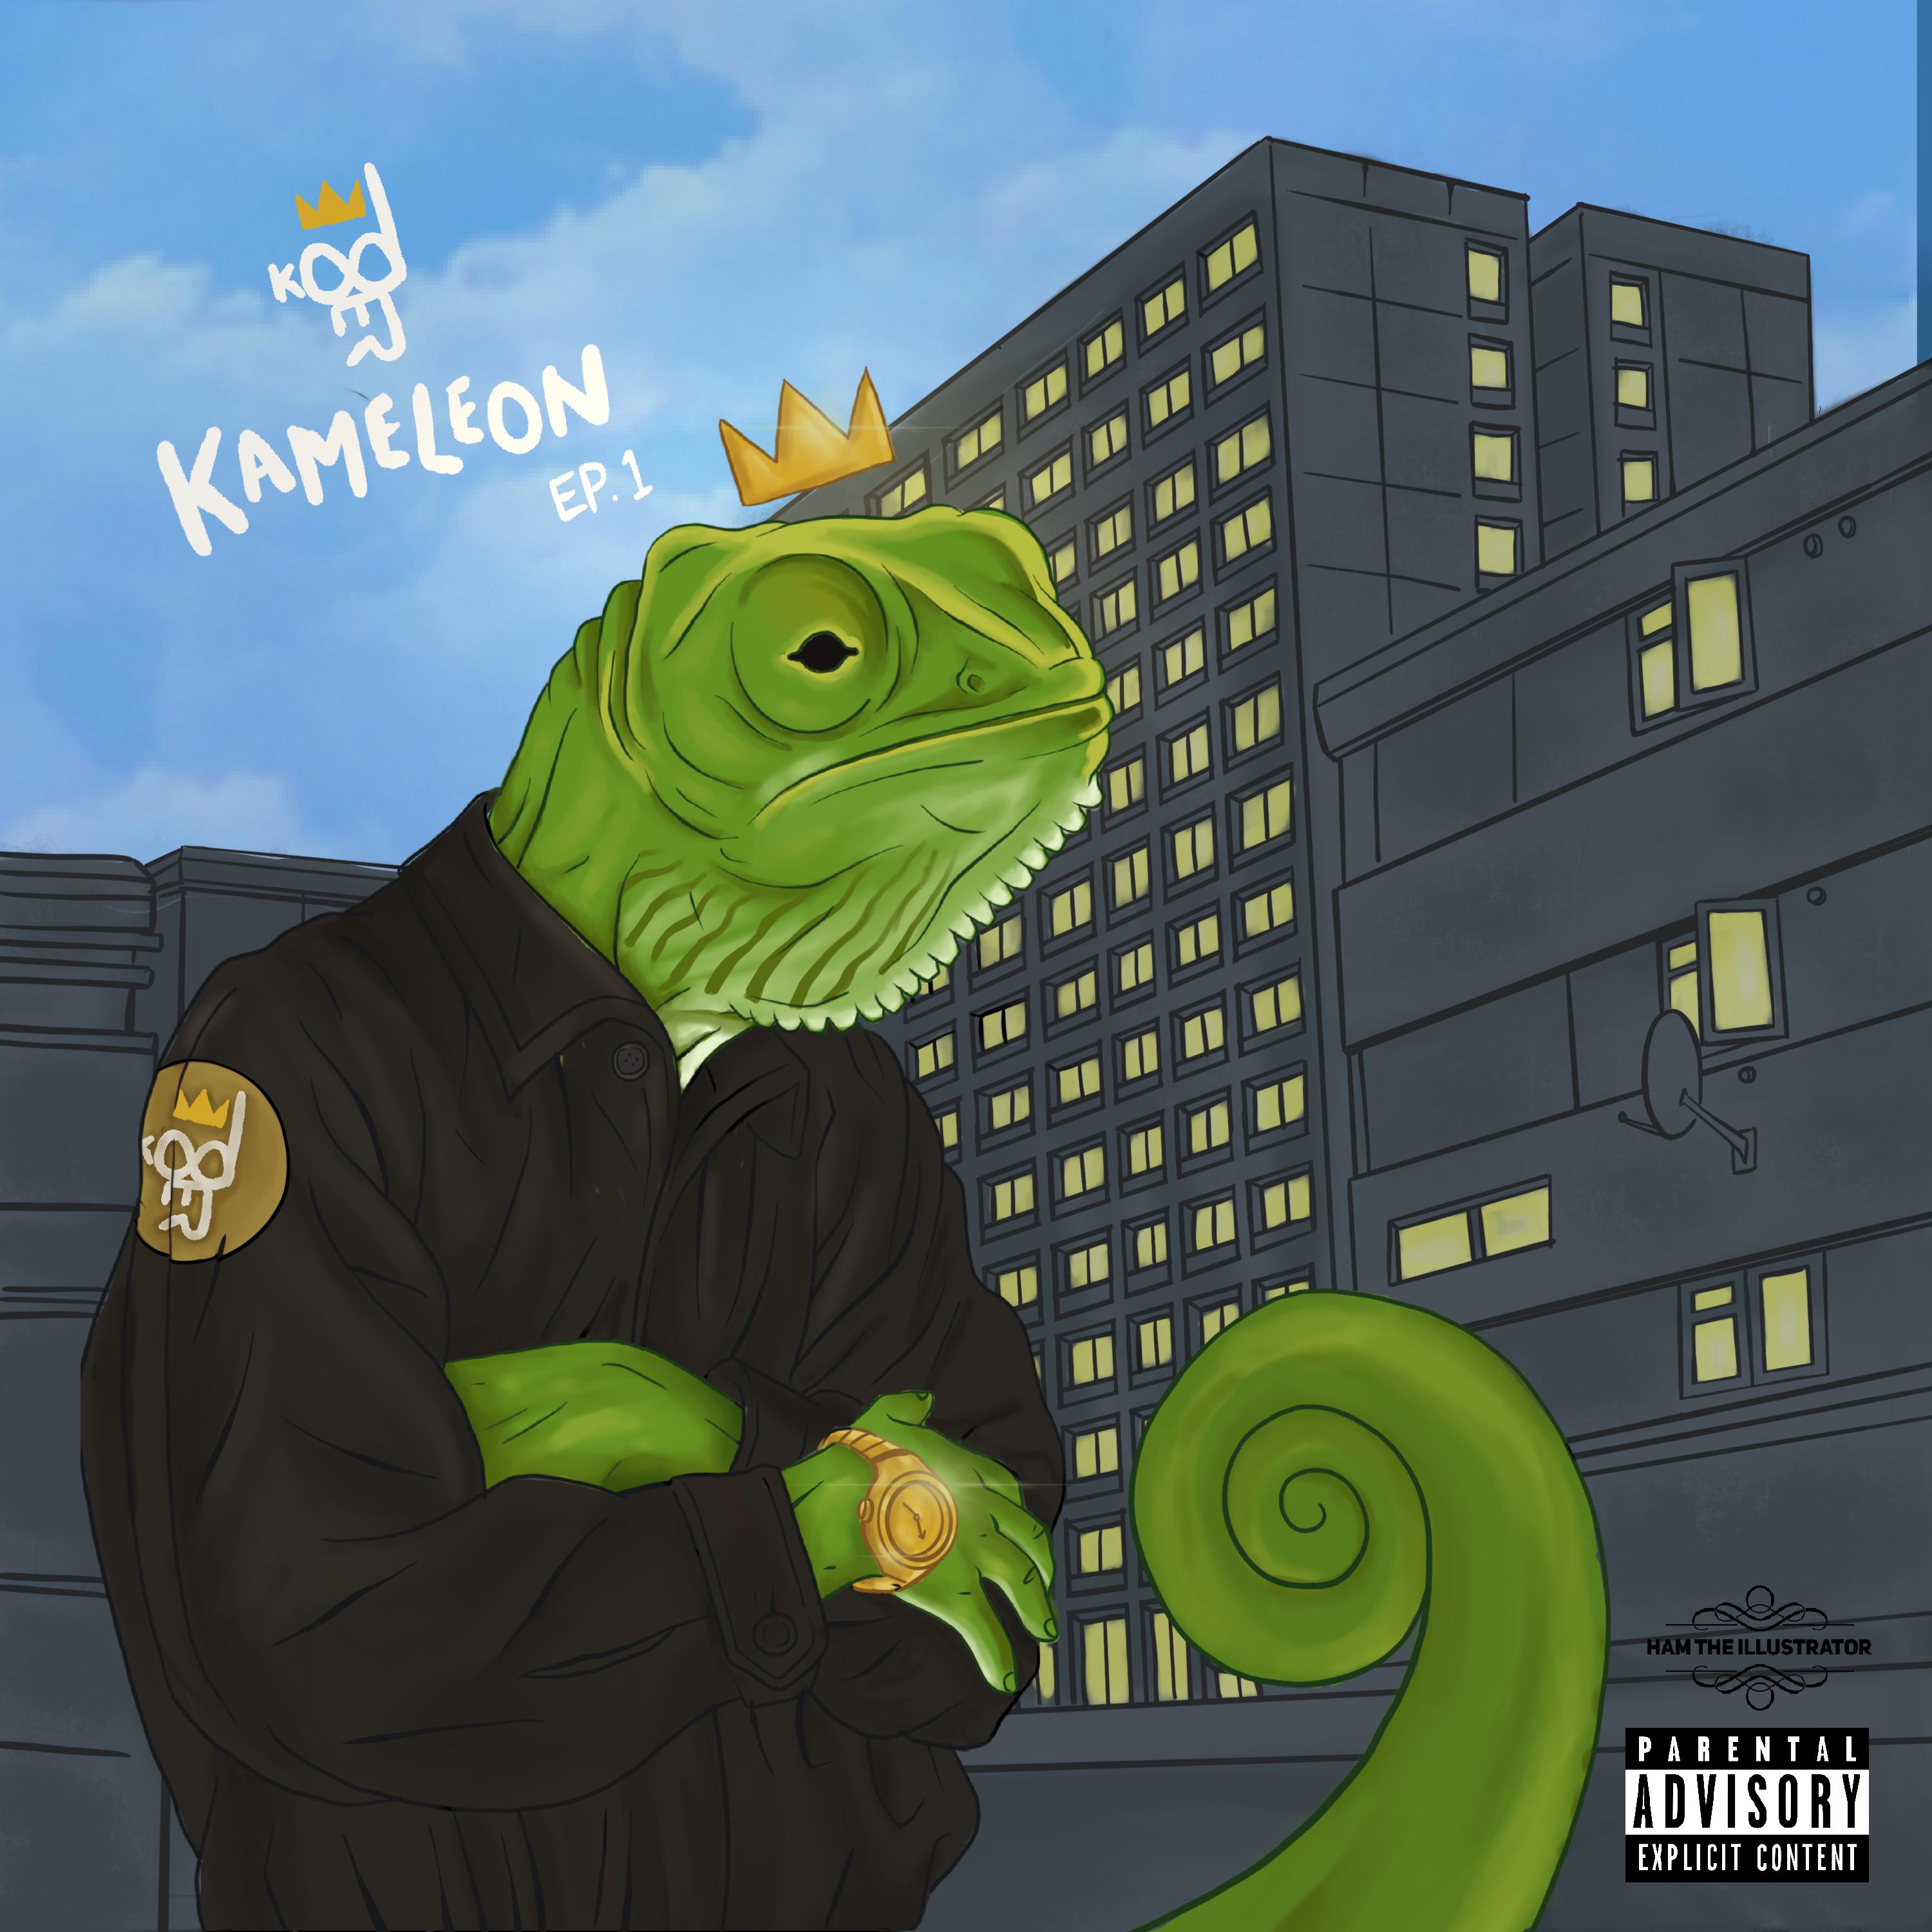 Kameleon EP 1